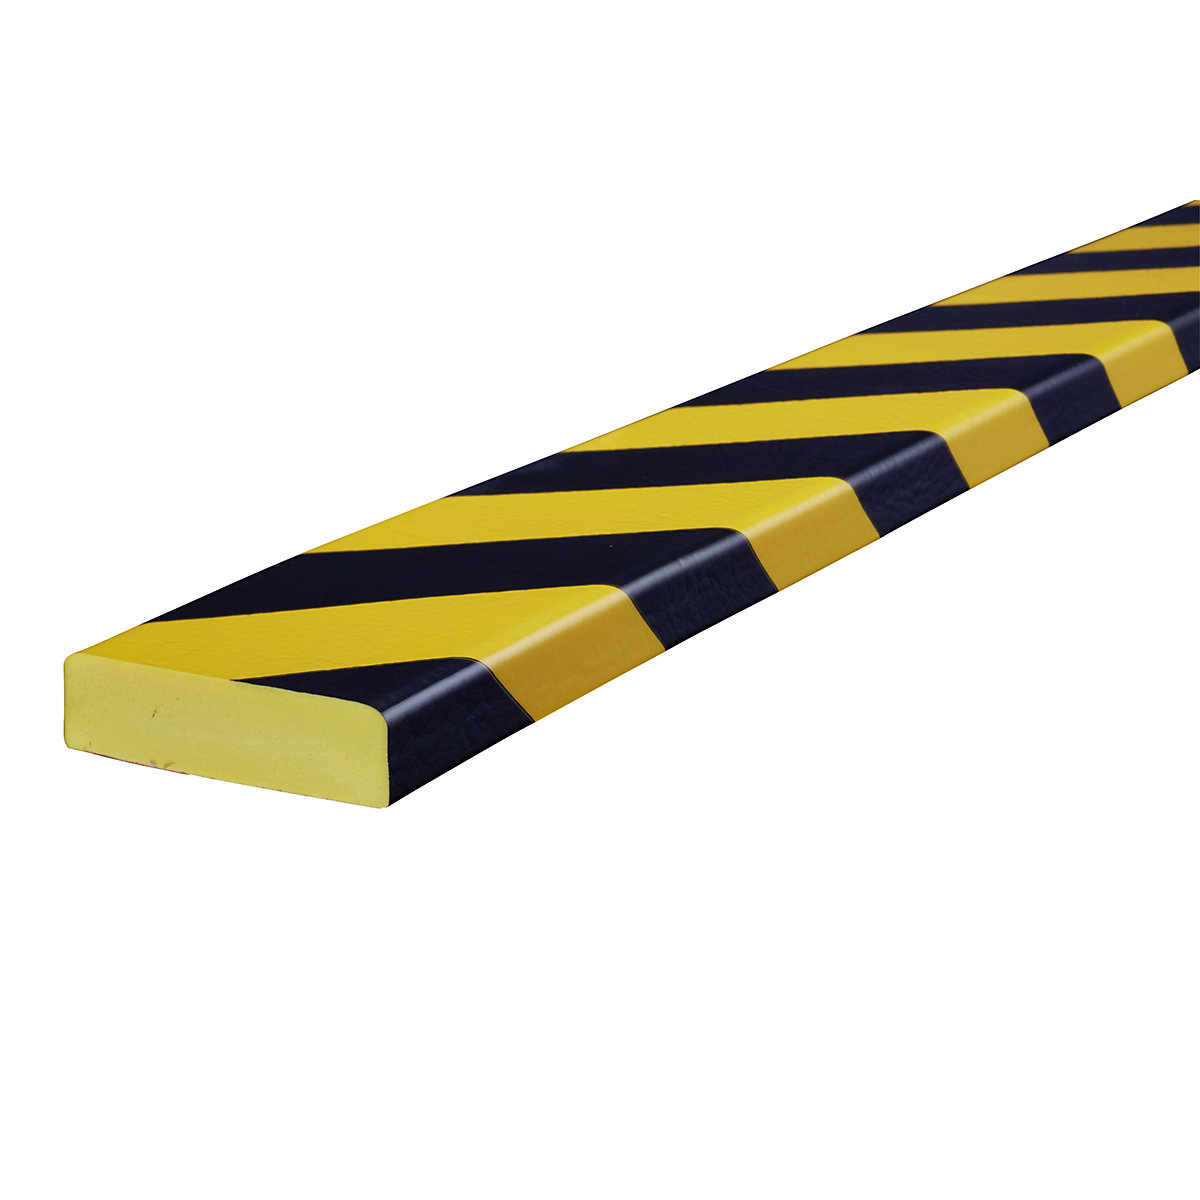 Zabezpieczenie powierzchni Knuffi® – SHG, typ S, szt. 1 m, żółty / czarny-25